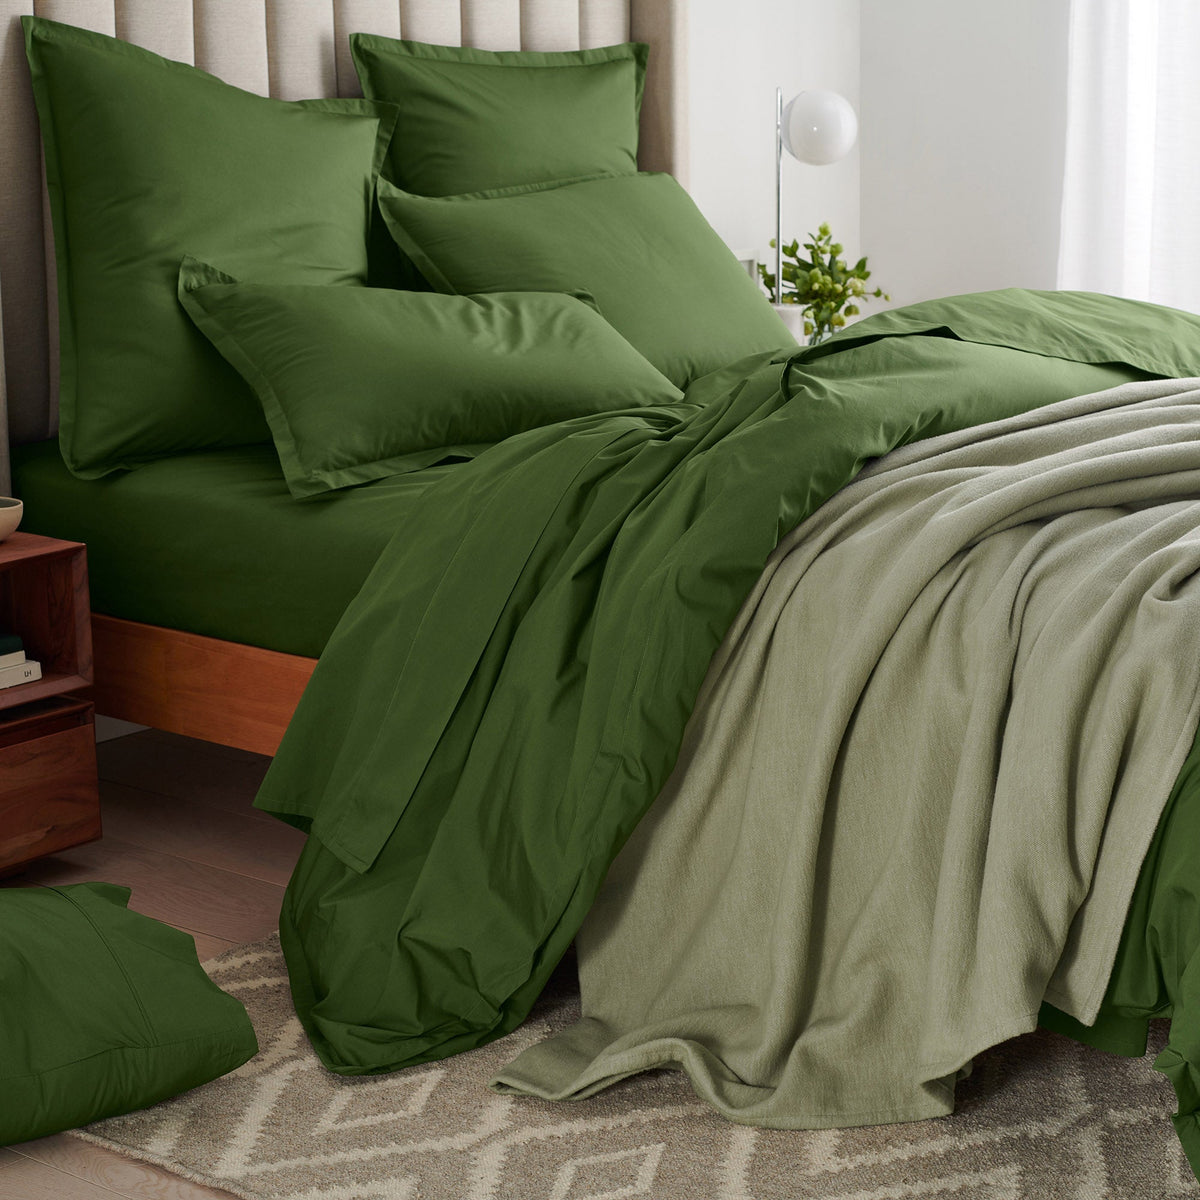 Moss Green Sheet Set Comfy Solid Sateen